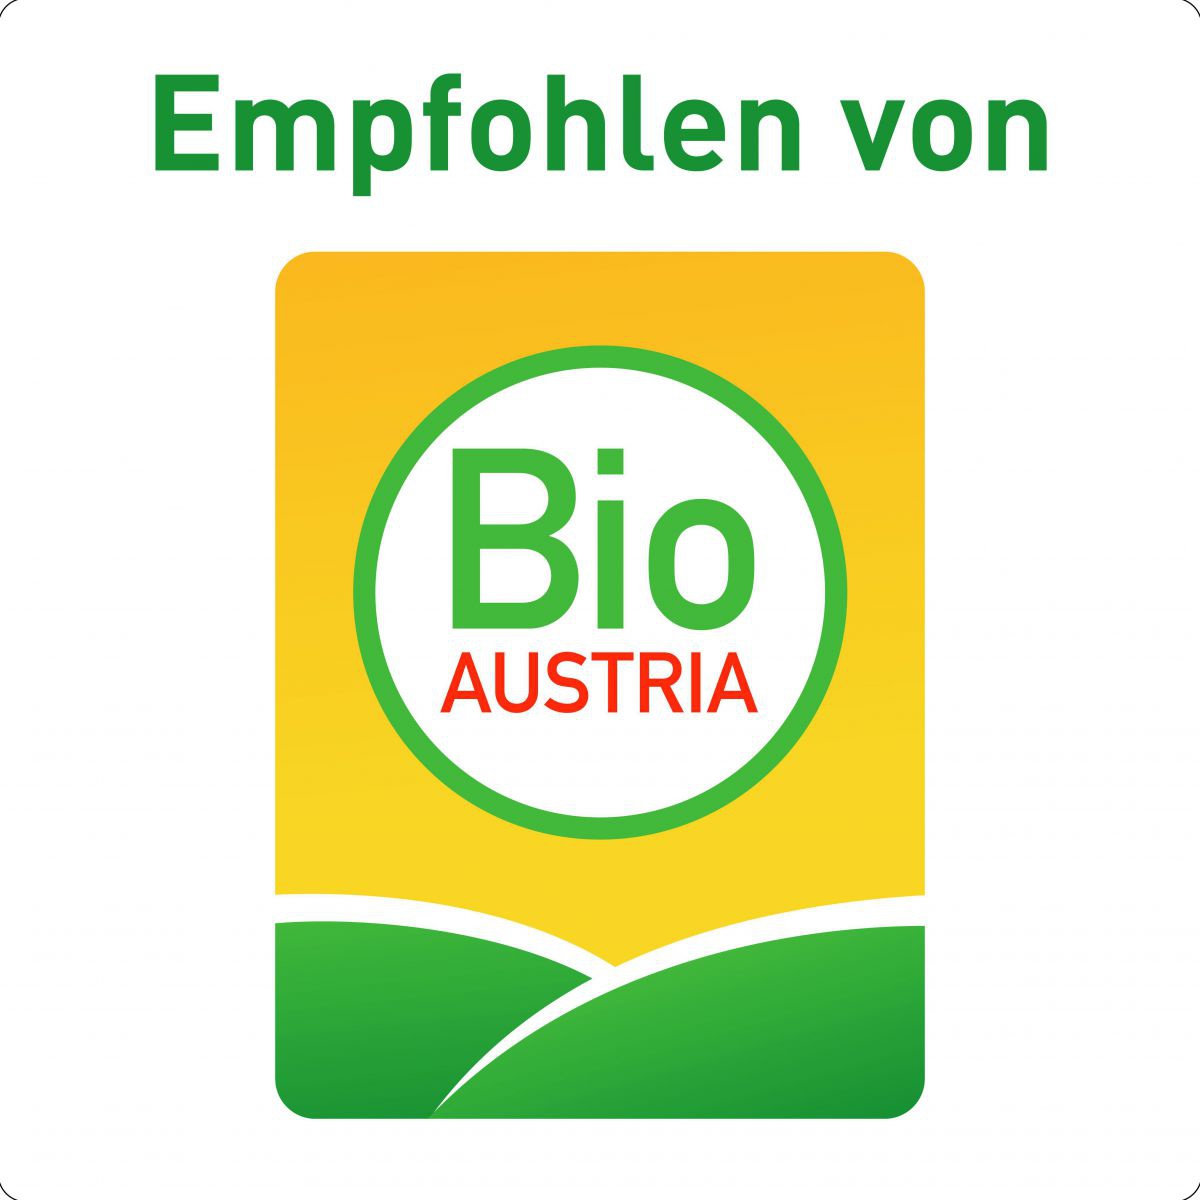 Logo: Empfohlen von Bio Austria.